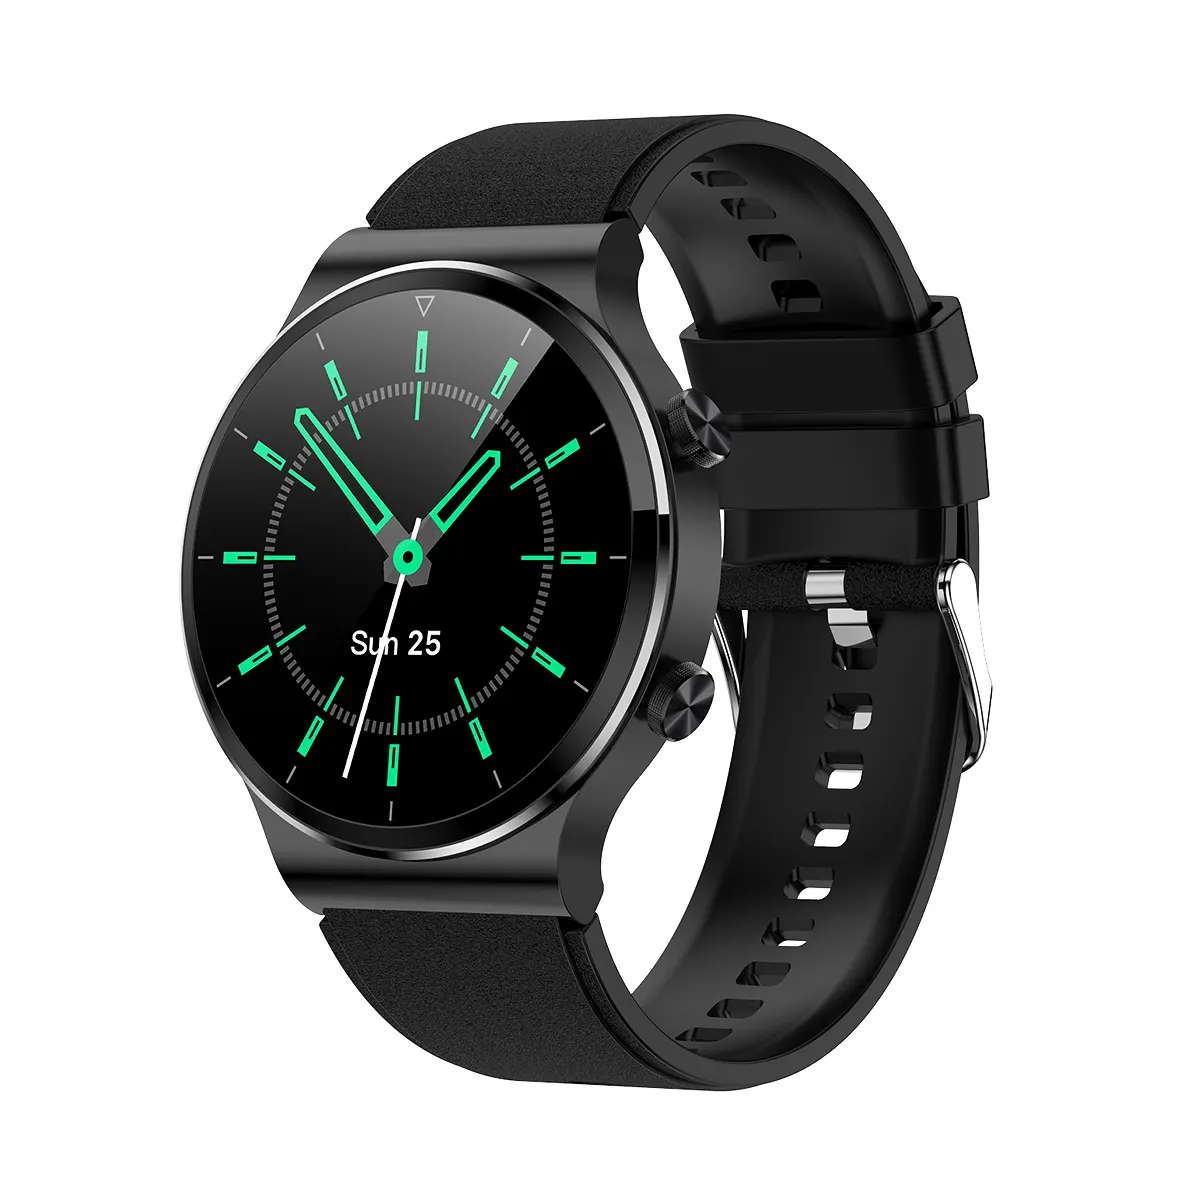 Neuer Trend G51 Smartwatch BT Anruf nachricht Erinnerung Bluts auer stoff Handys Uhren Leben wasserdicht iOS Android Smartwatch G51